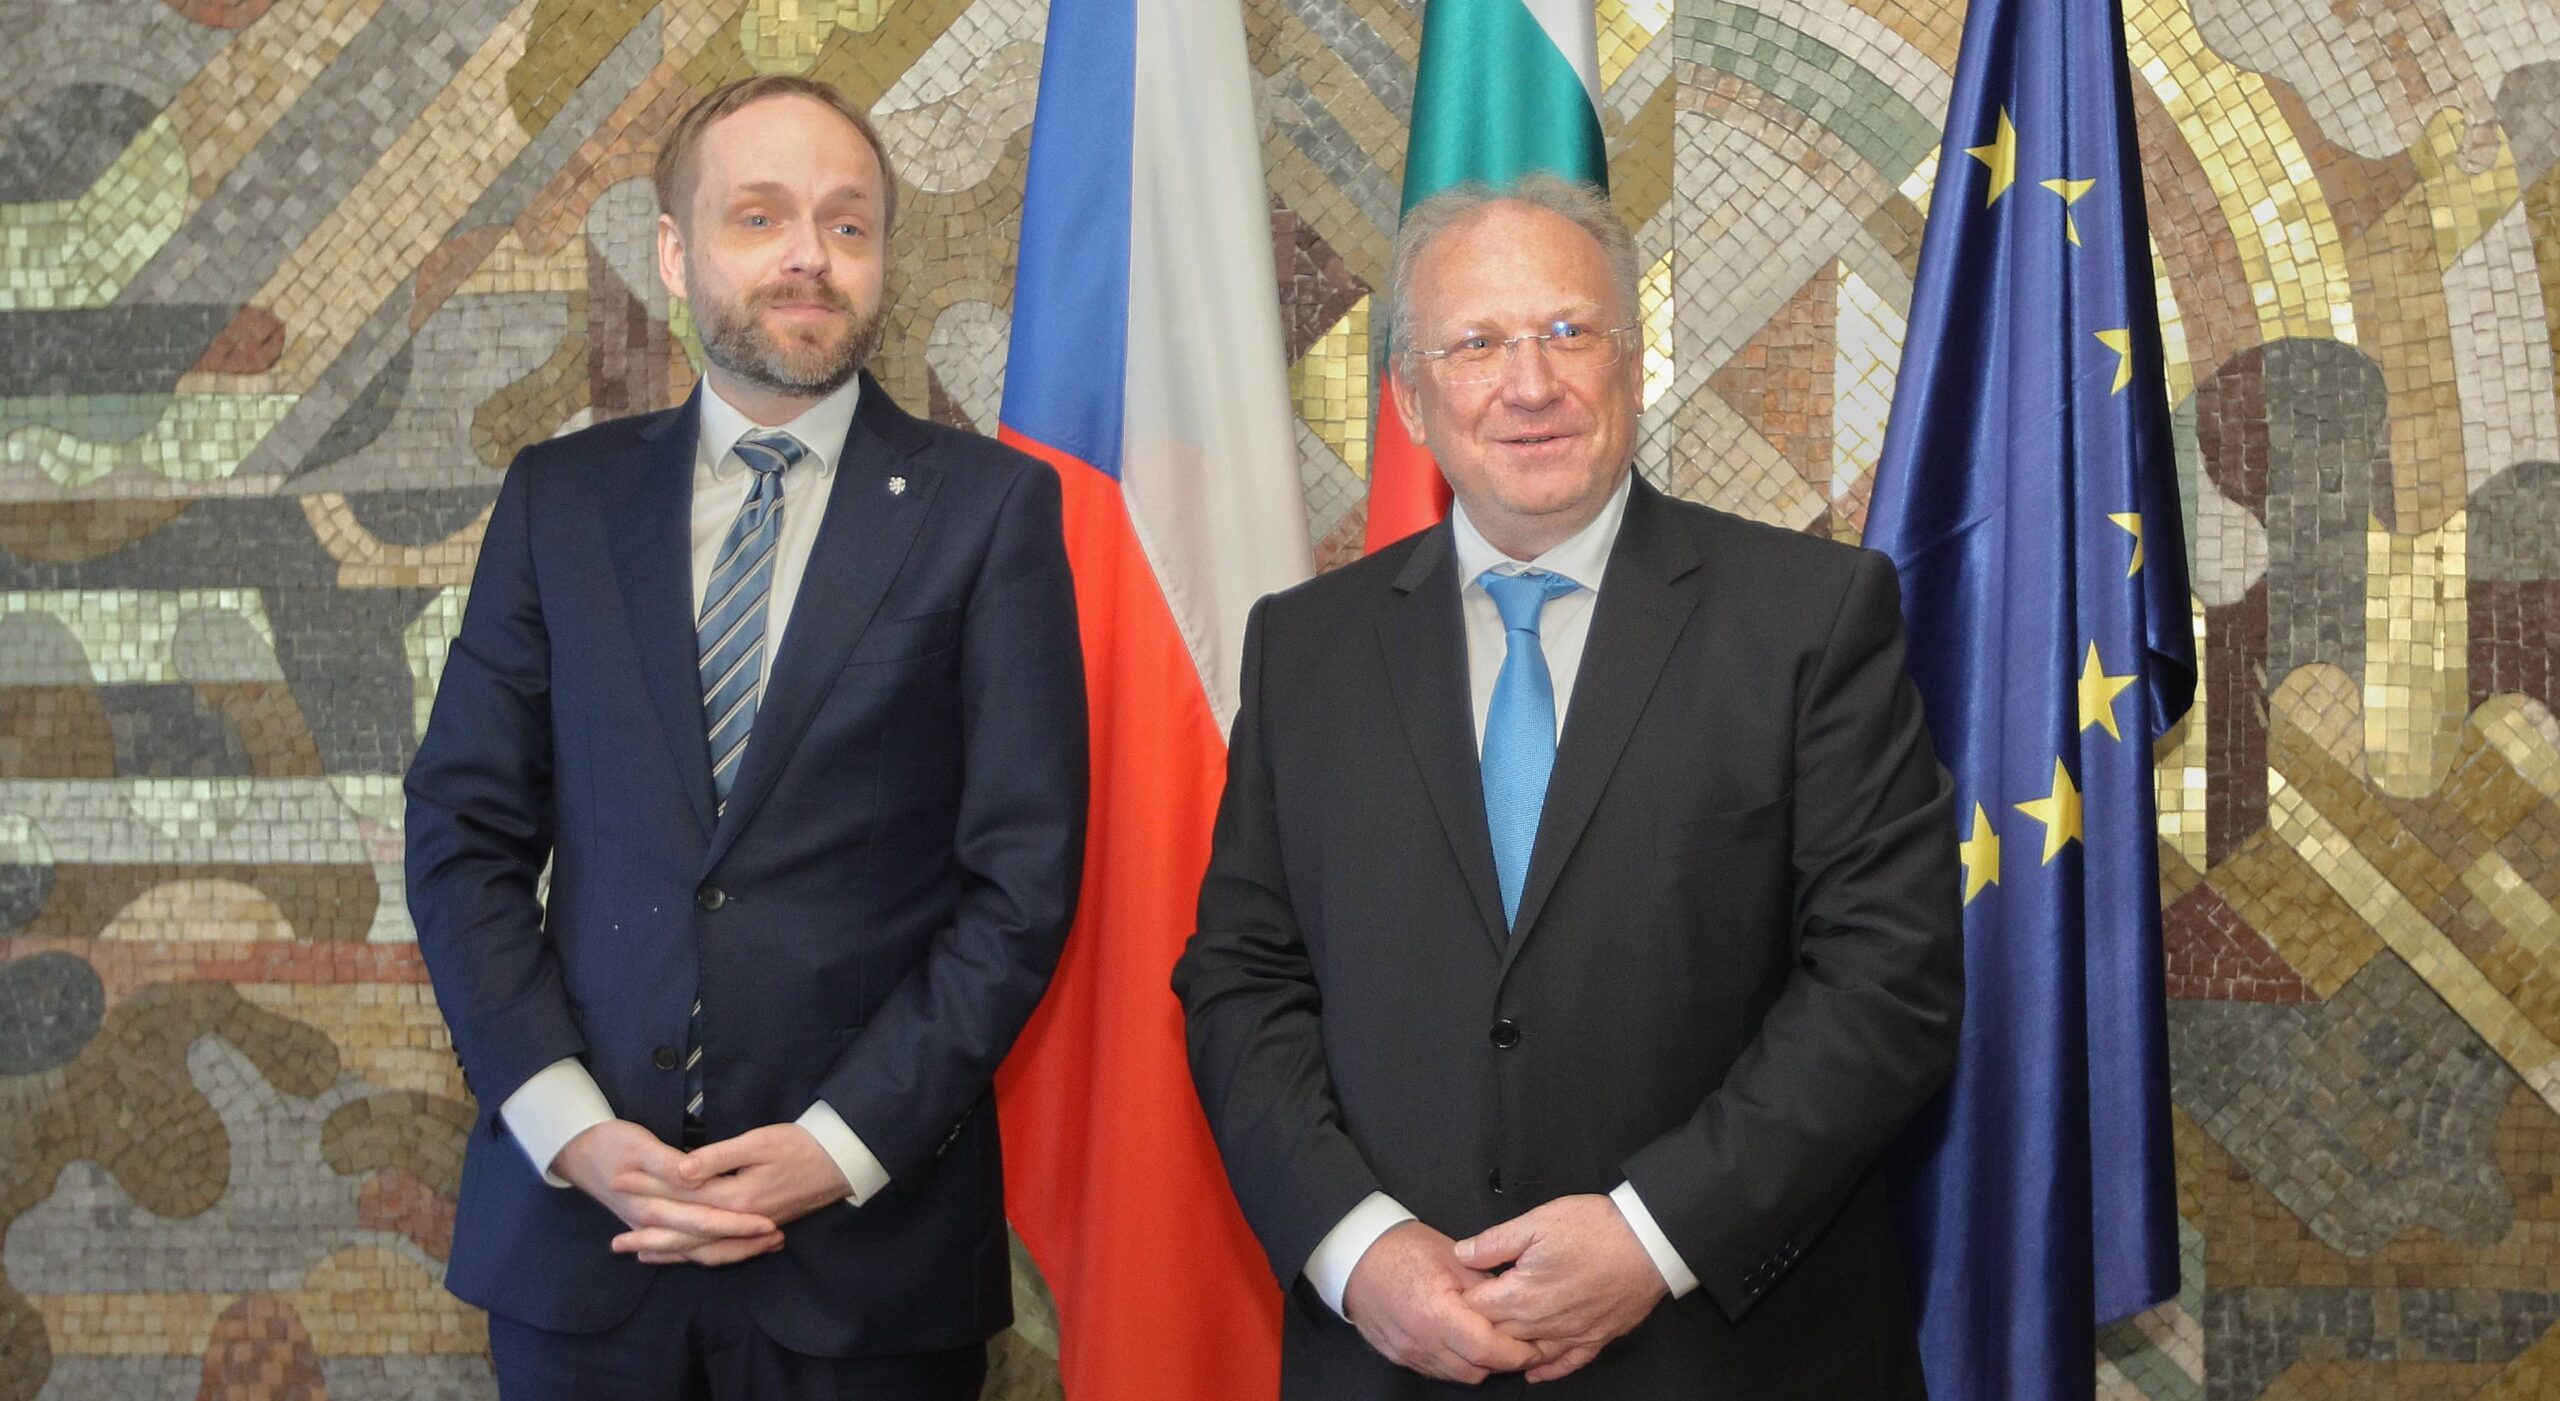 Външните министри на България и Чехия обсъдиха възможностите за задълбочаване на сътрудничеството, включително в икономиката и туризма